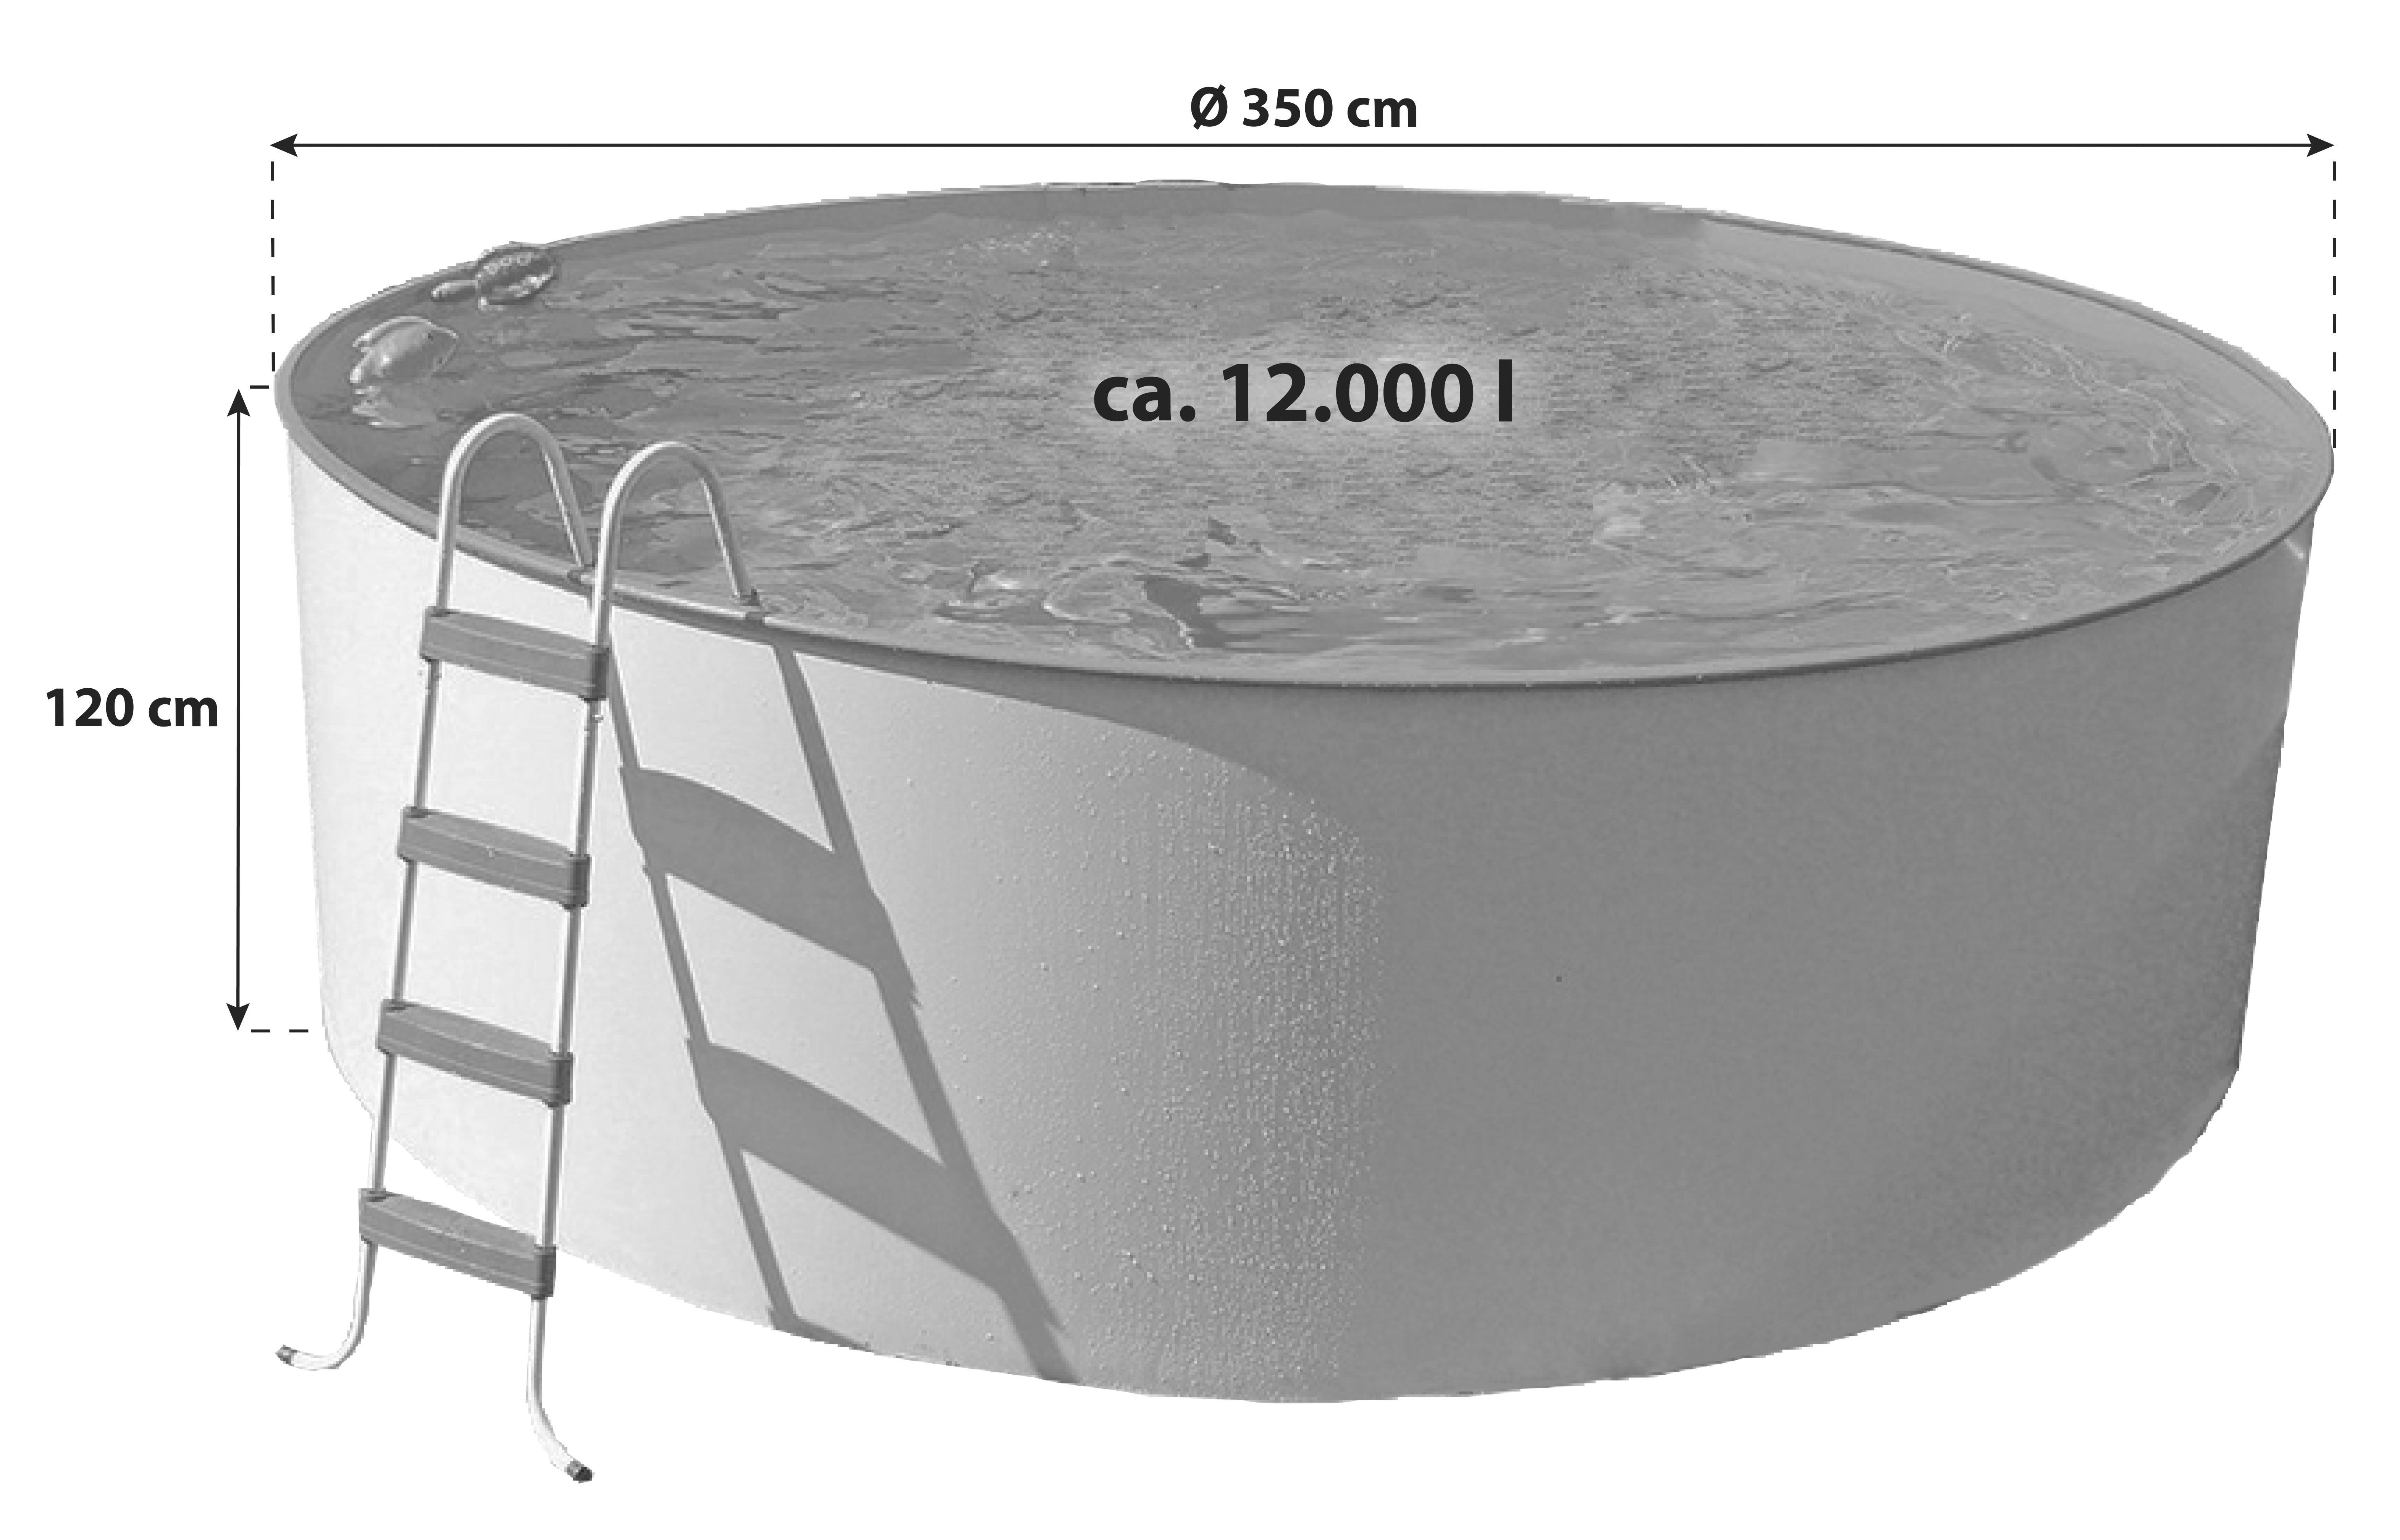 Stahlwandpool Rund Steely M mit Leiter Ø 350 cm - Weiß, MODERN, Metall (350/120cm)